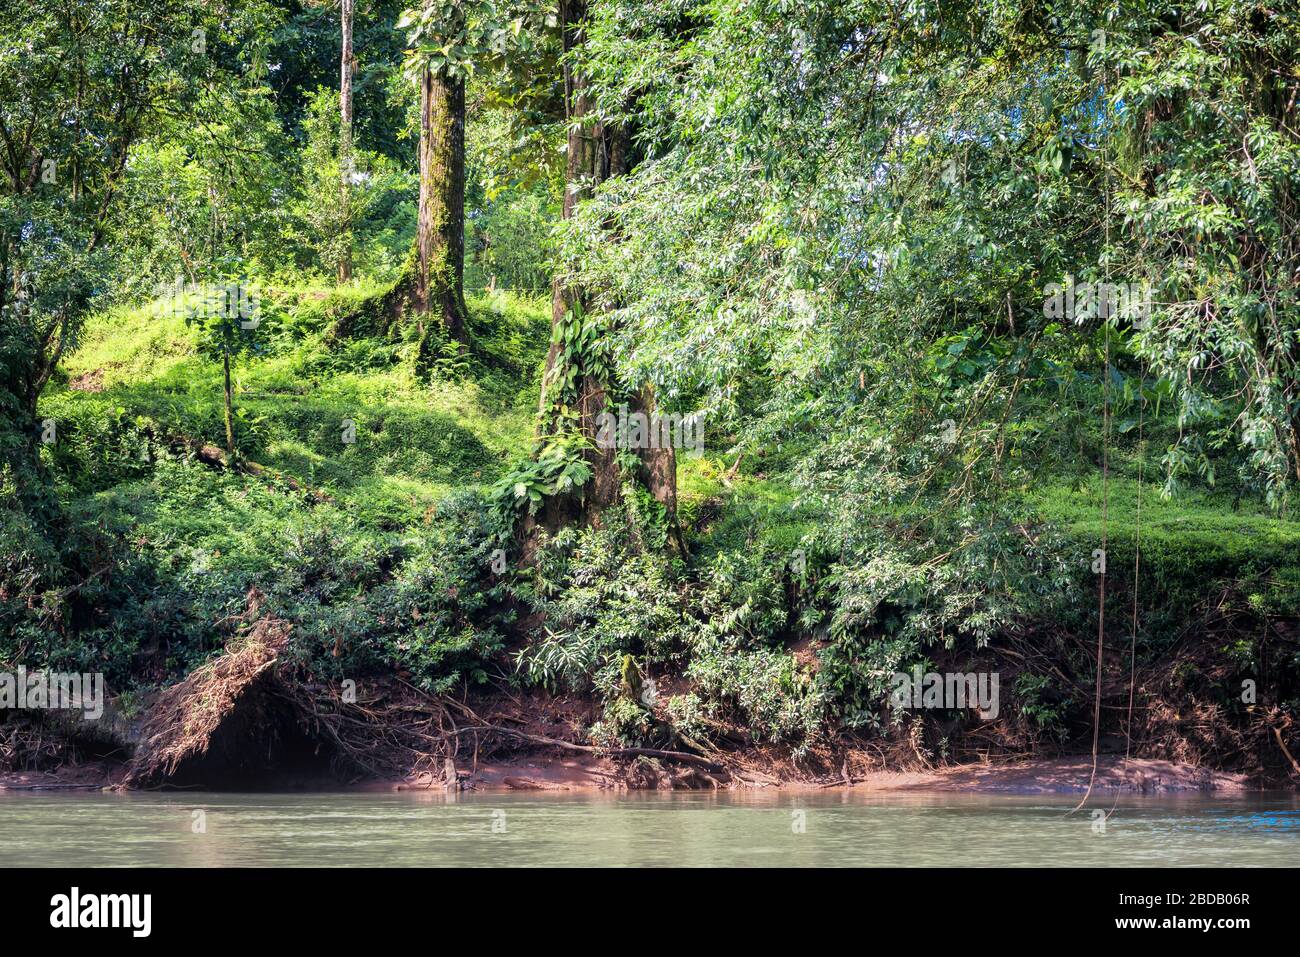 Paysage de rêve d'une rivière tropicale entourée d'une forêt luxuriante. Rio Sarapiqui, Costa Rica. Banque D'Images